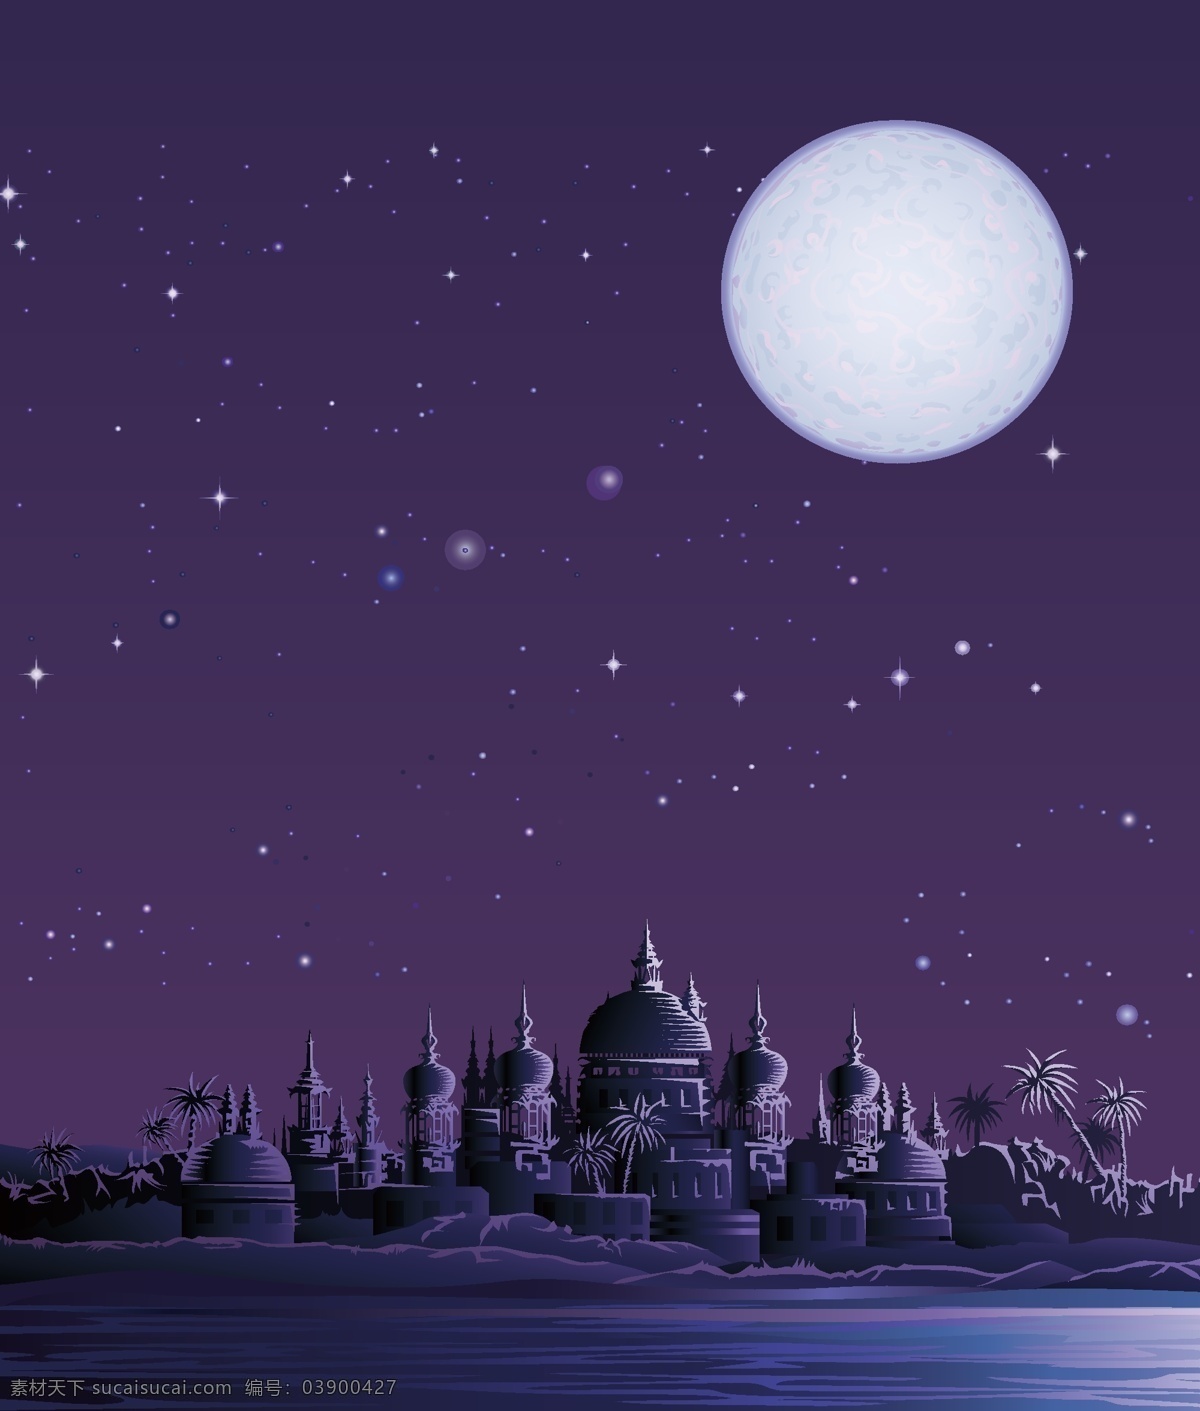 矢量 手绘 卡通 夜空 背景 紫色 城堡 月亮 质感 海报 童趣